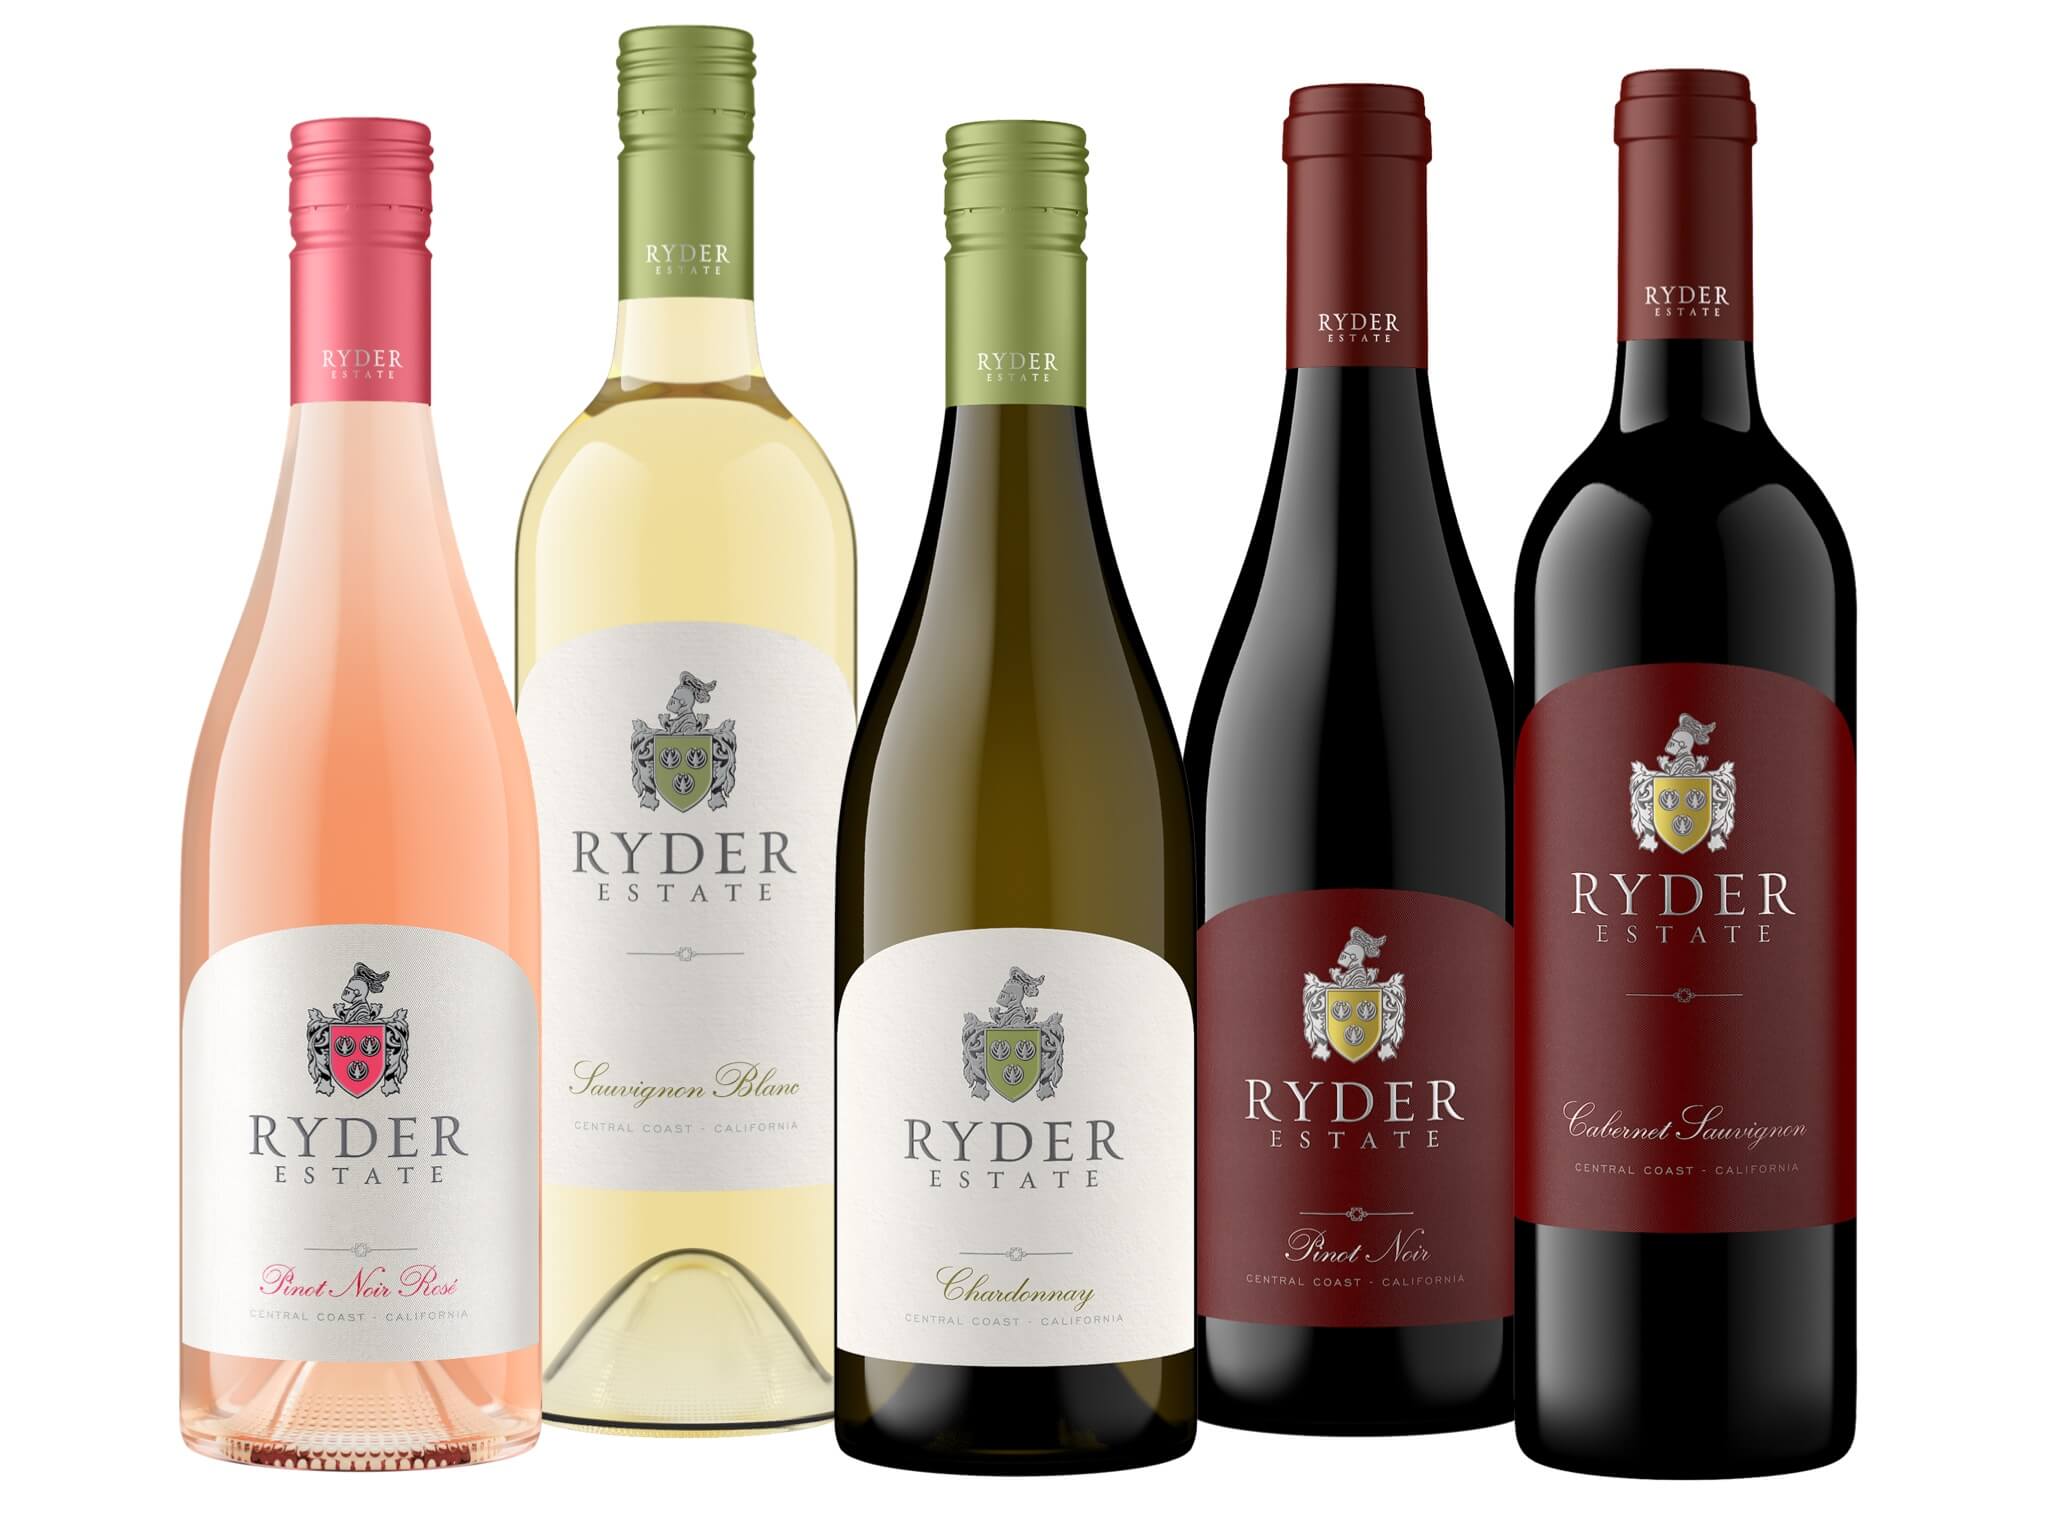 Ryder Estate wine bottles